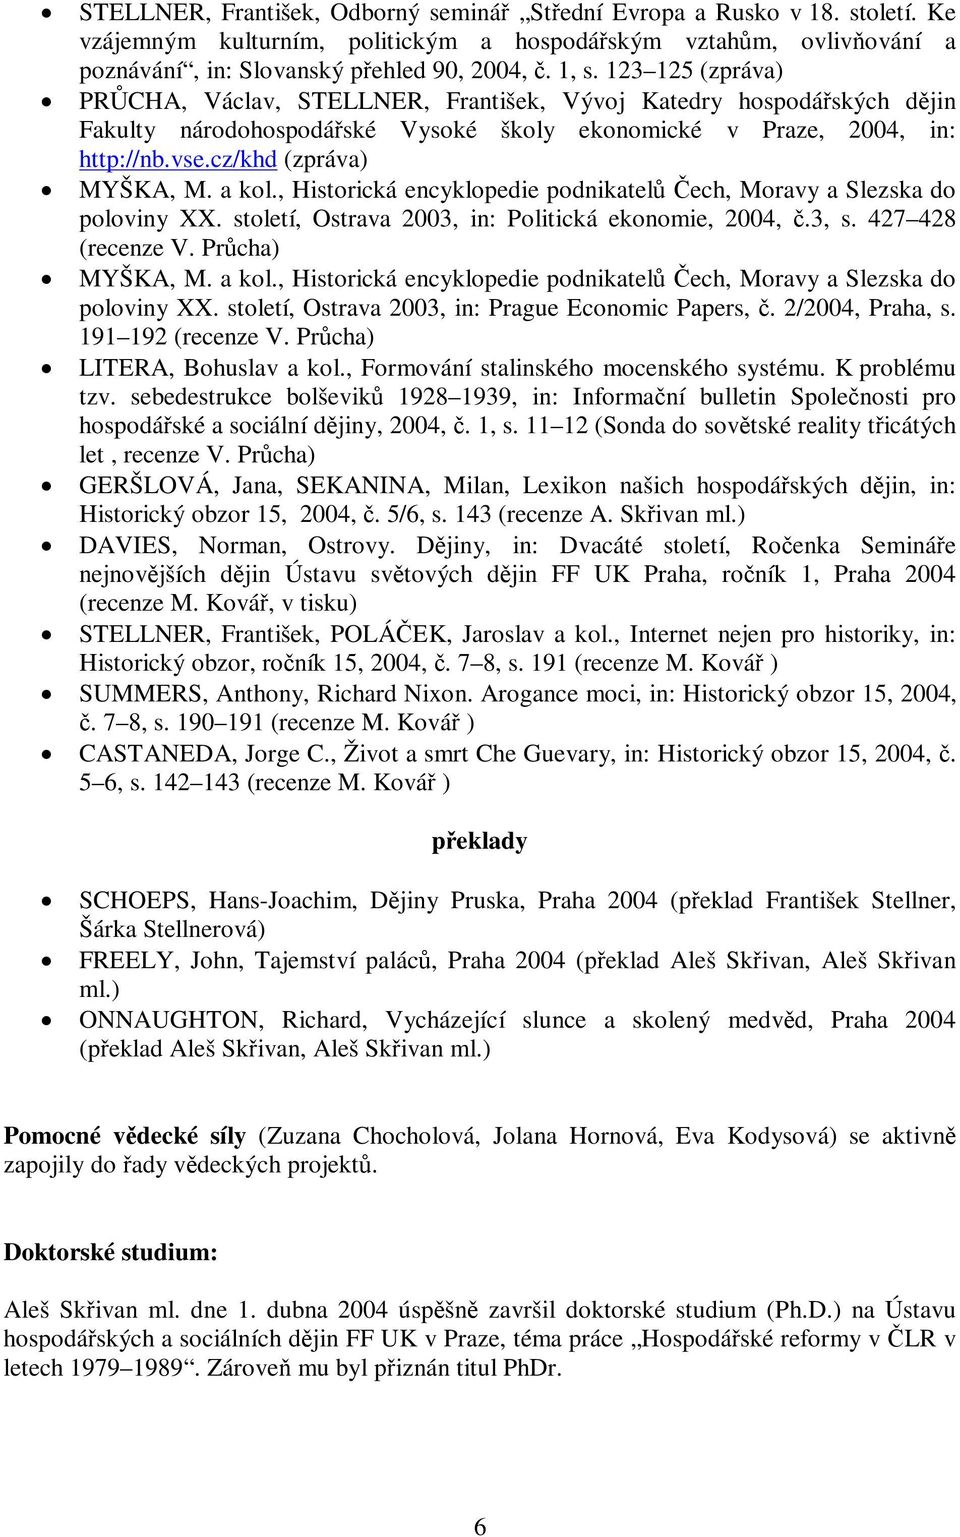 , Historická encyklopedie podnikatel ech, Moravy a Slezska do poloviny XX. století, Ostrava 2003, in: Politická ekonomie, 2004,.3, s. 427 428 (recenze V. Prcha) MYŠKA, M. a kol.